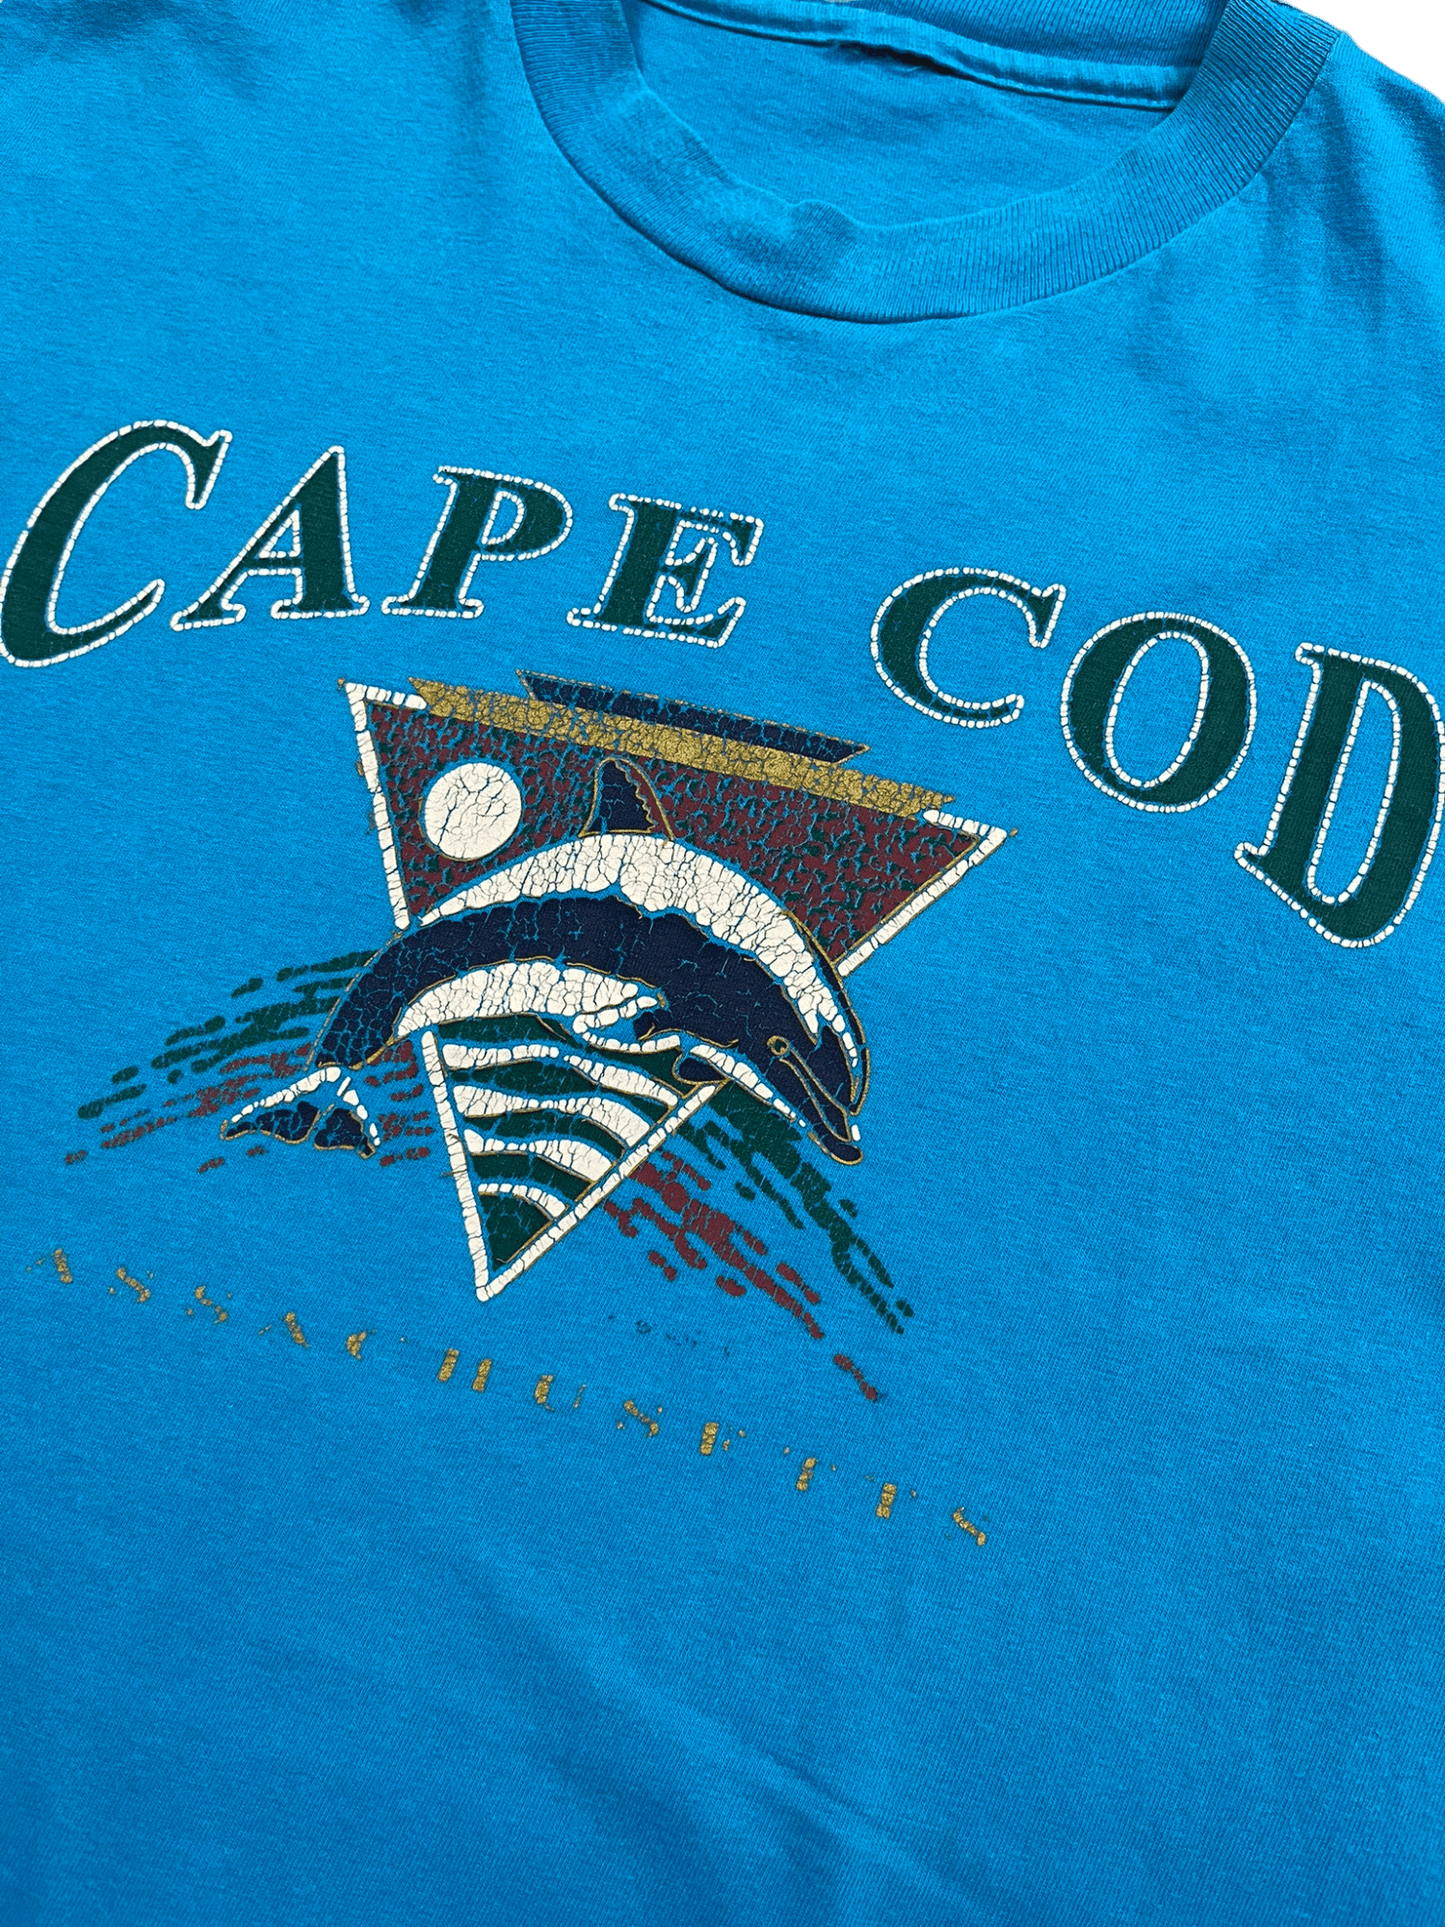 The Vintage Racks T-Shirt Cape Cod - XL